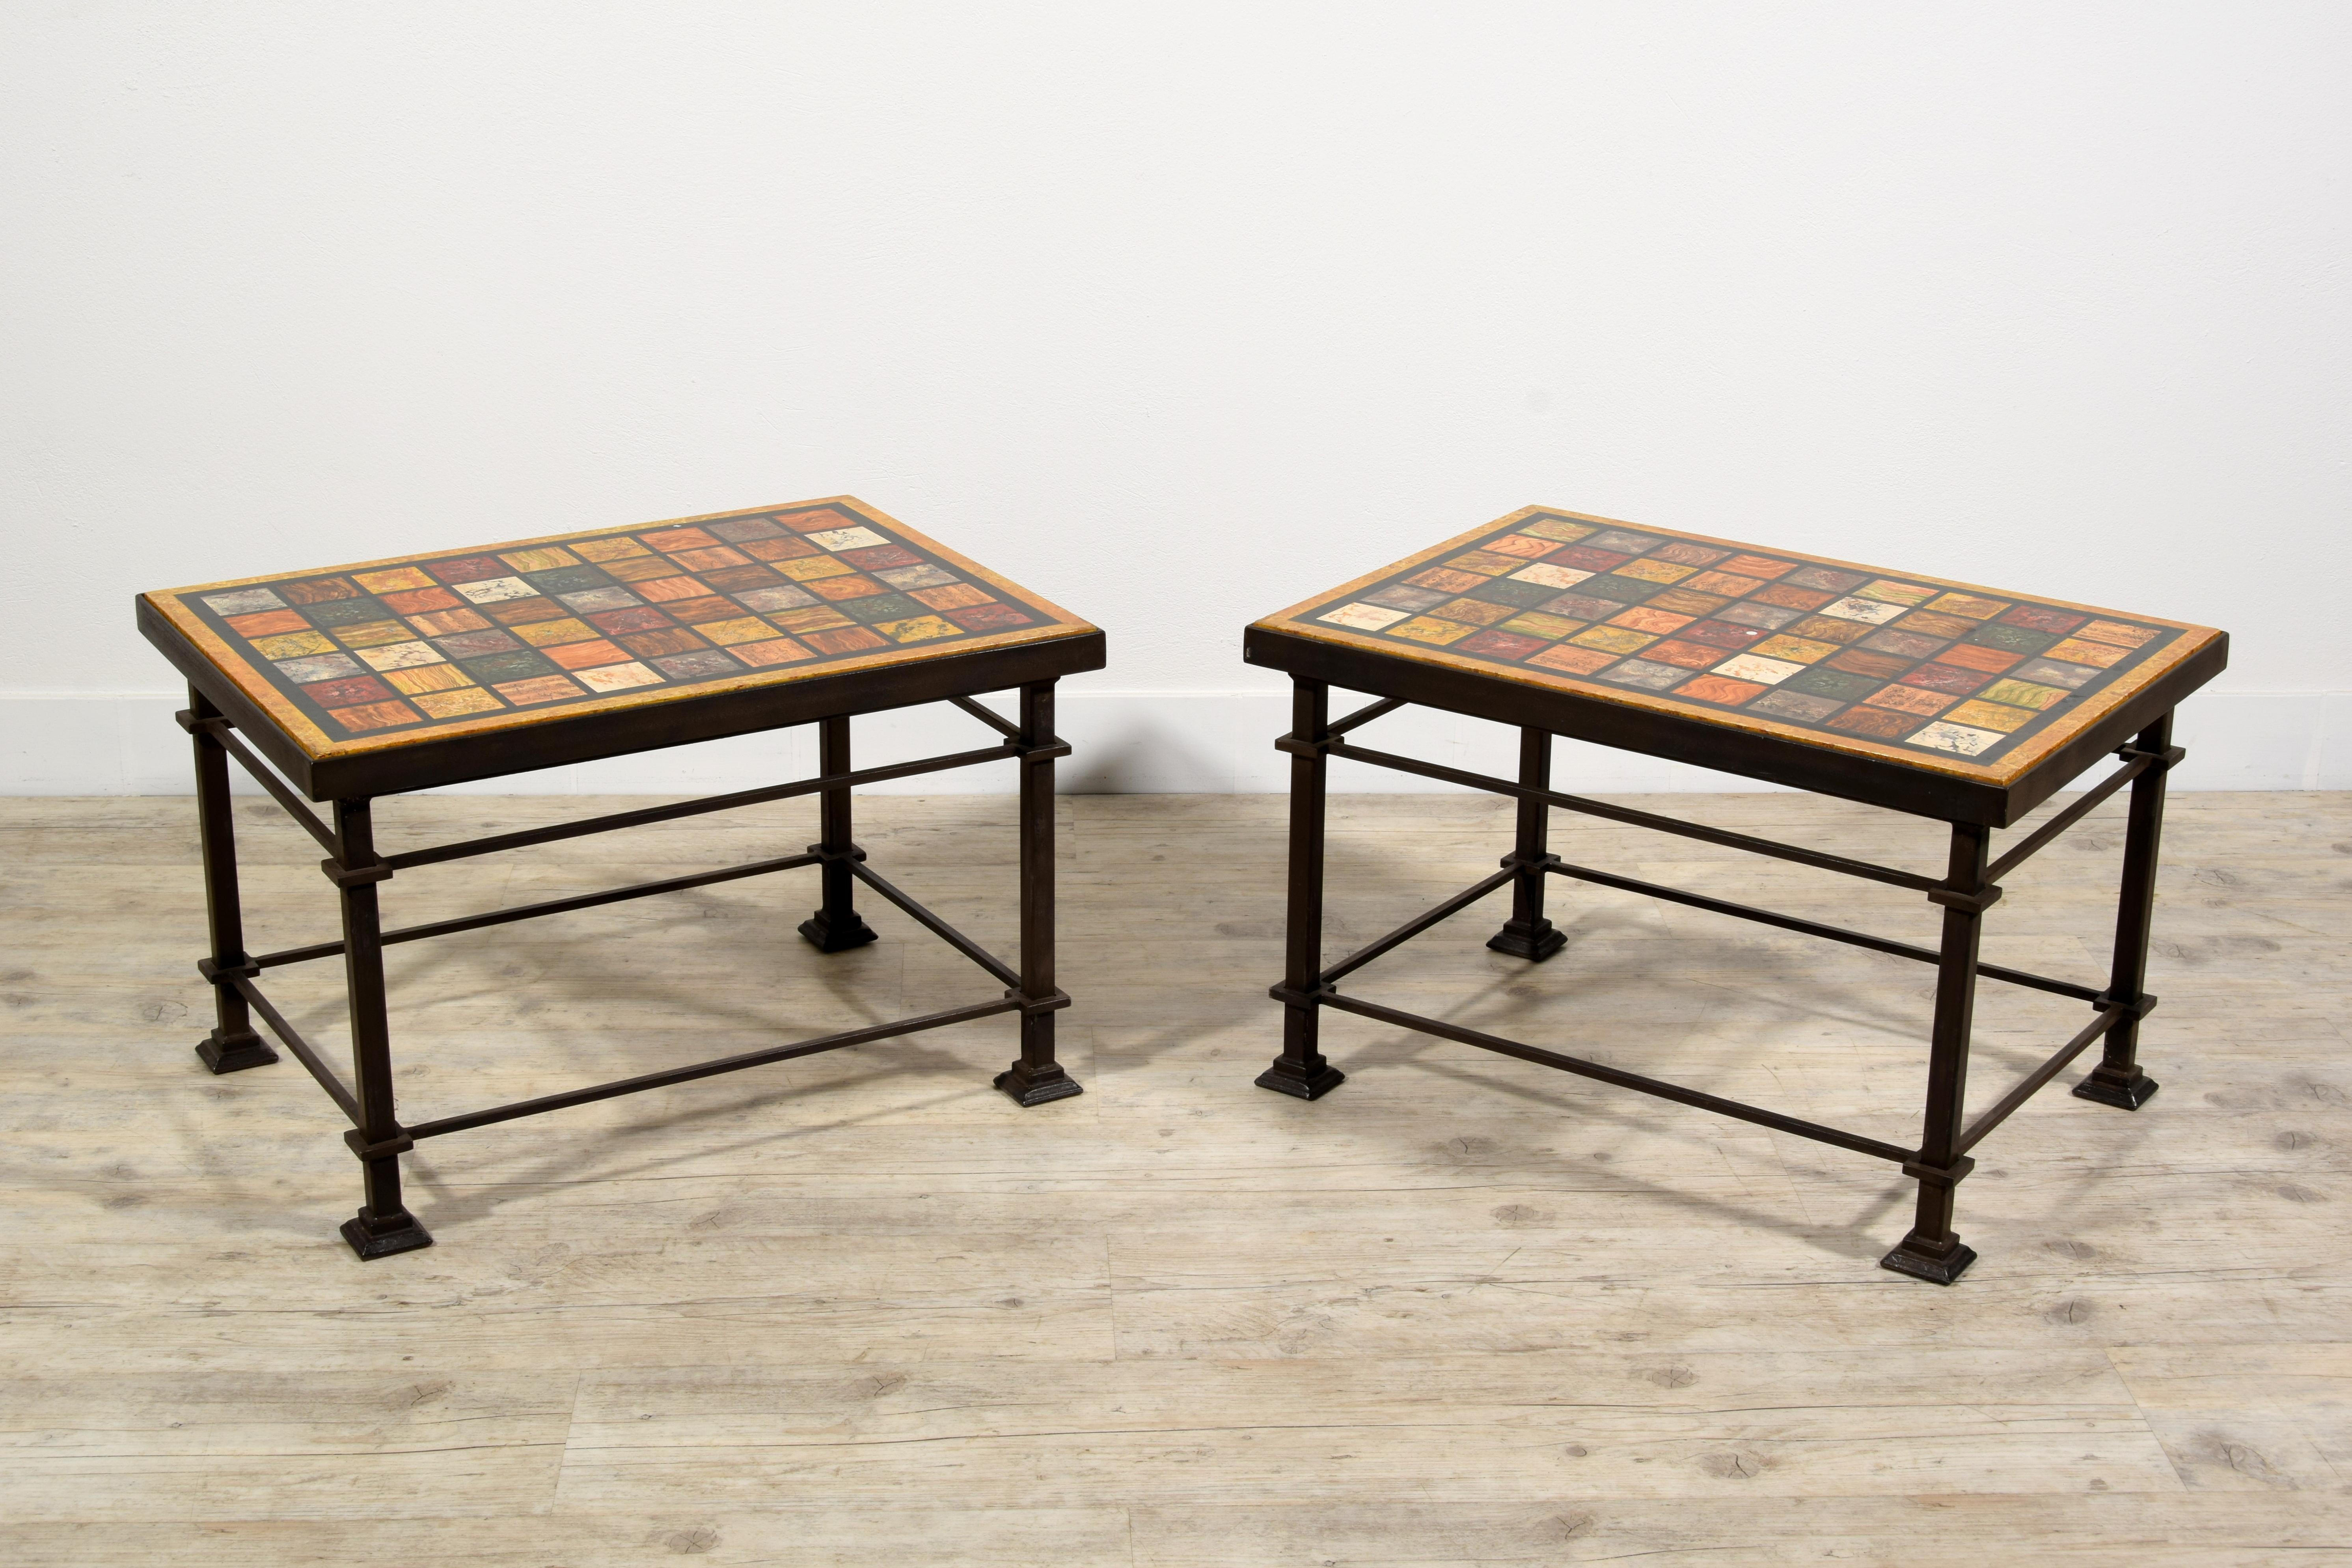 Paire de tables basses romaines avec plateau en bois laqué du XXe siècle
Dimensions : table basse simple : cm L 71,5 x P 51,5 x H 45
assemblé à partir du petit côté : cm 134 x 51,5
assemblé à partir du côté long : cm 103 x 71,5

La paire de tables a